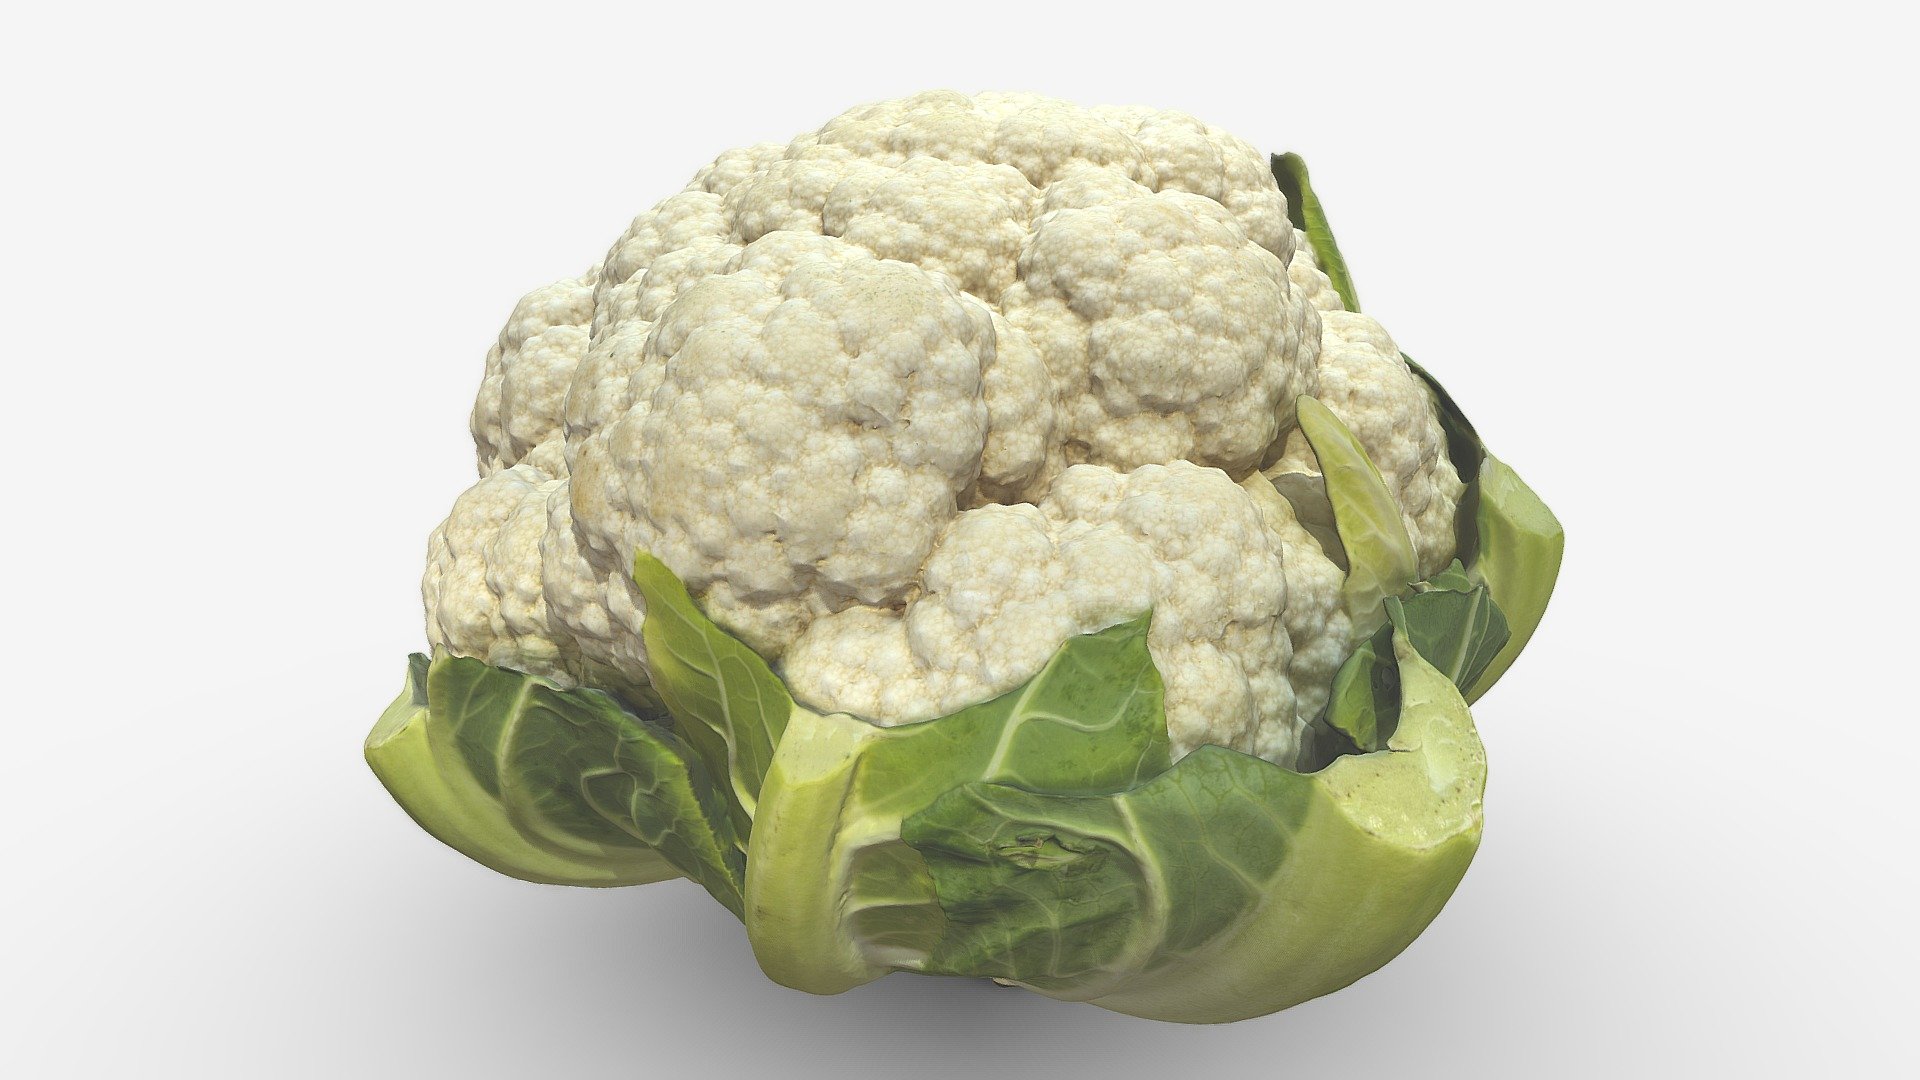 Cauliflower photogrammetry from 417 photographs 3d model